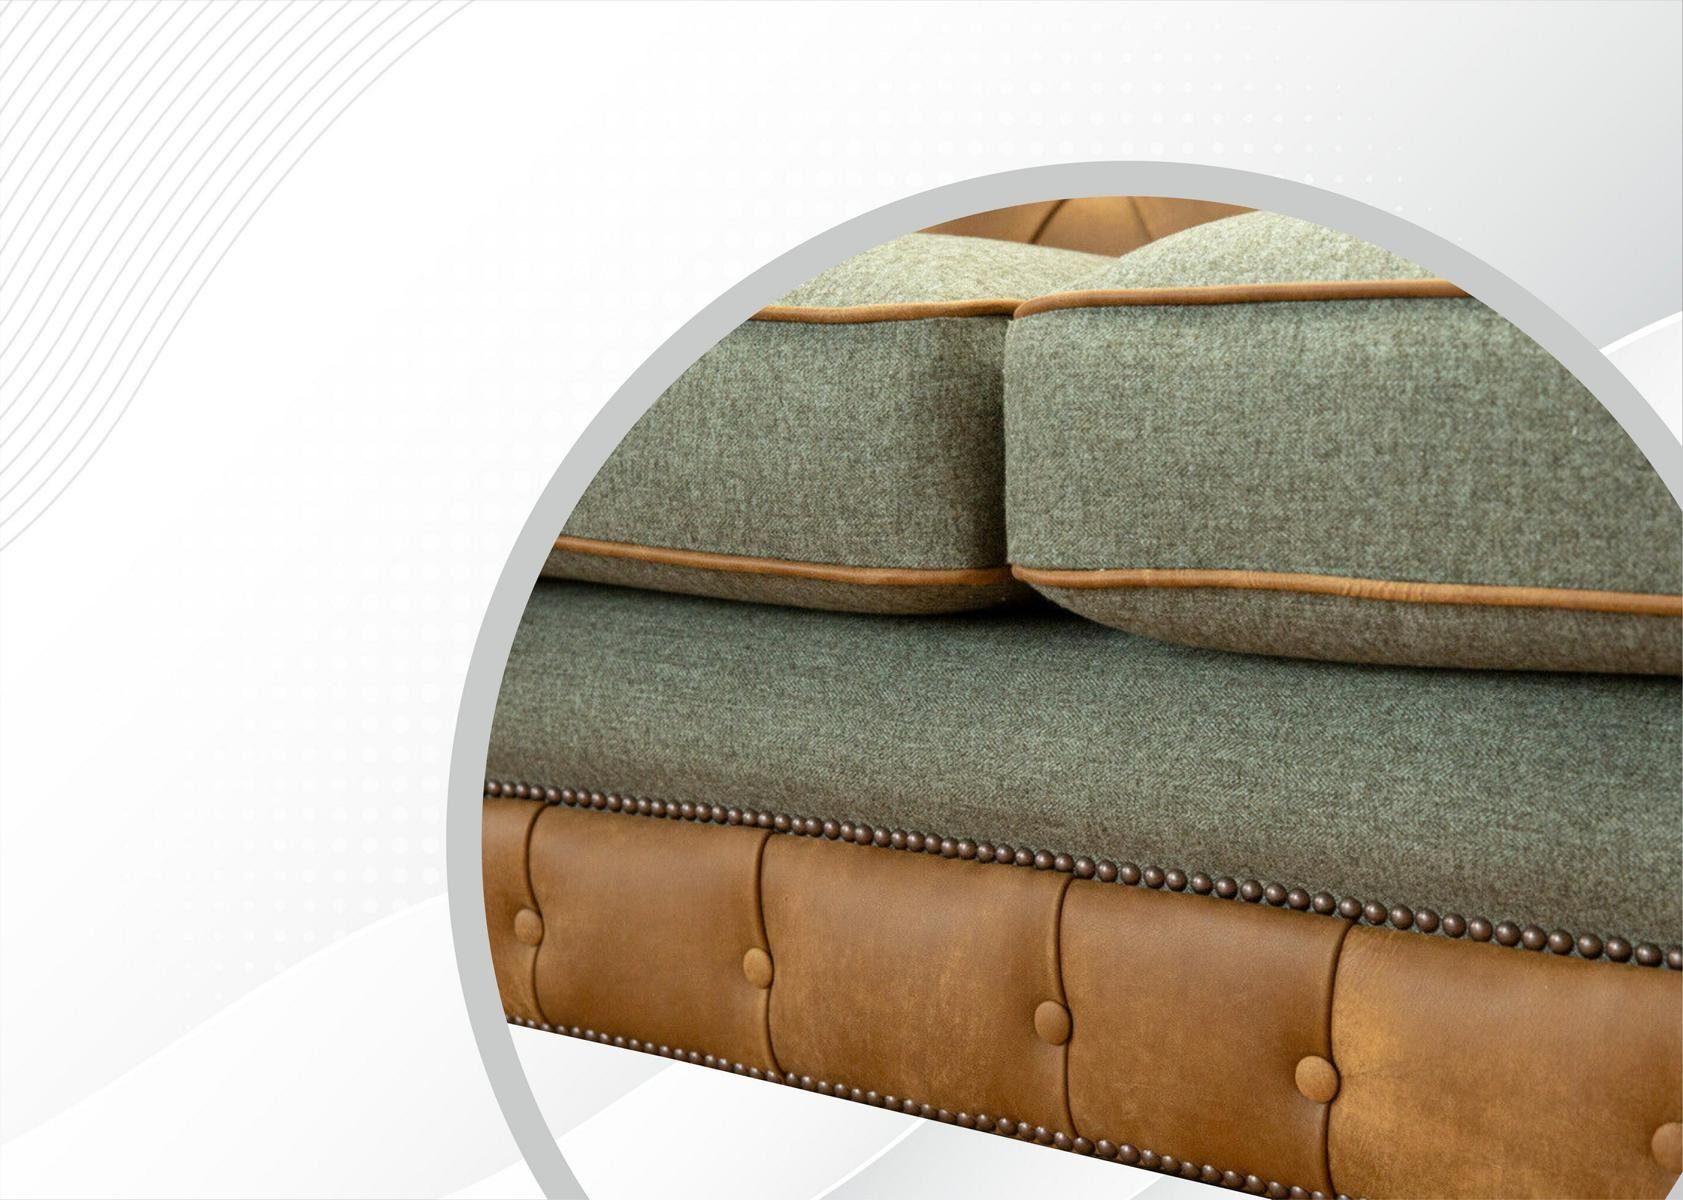 Chesterfield JVmoebel Die cm, 220 Rückenlehne 3 Sitzer Sofa Knöpfen. mit Chesterfield-Sofa, Design Couch